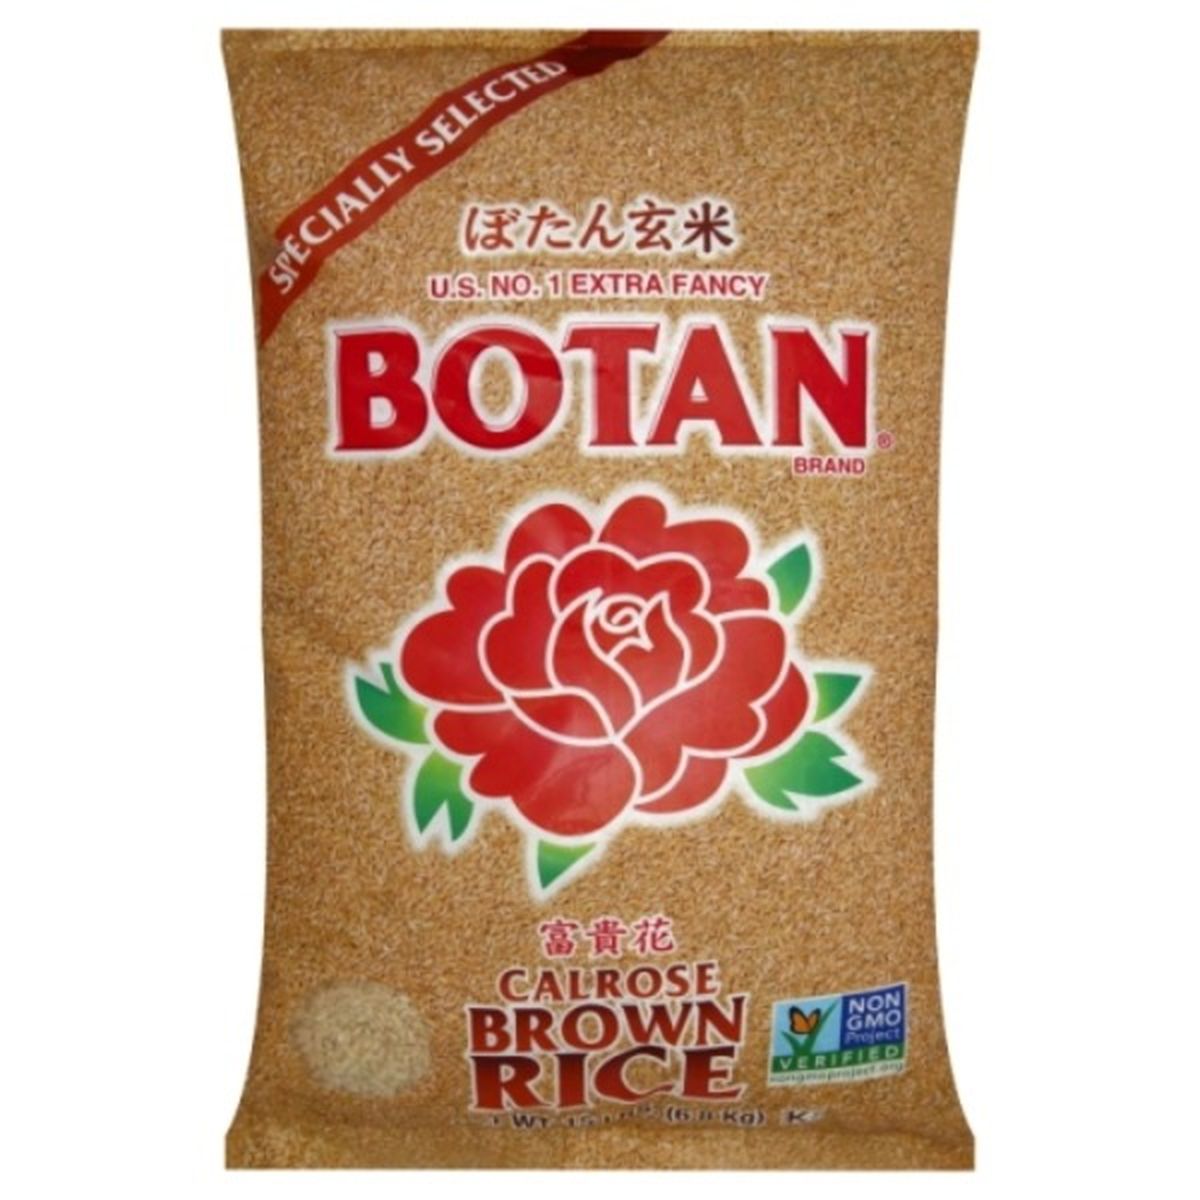 Calories in Botan Brown Rice, Calrose